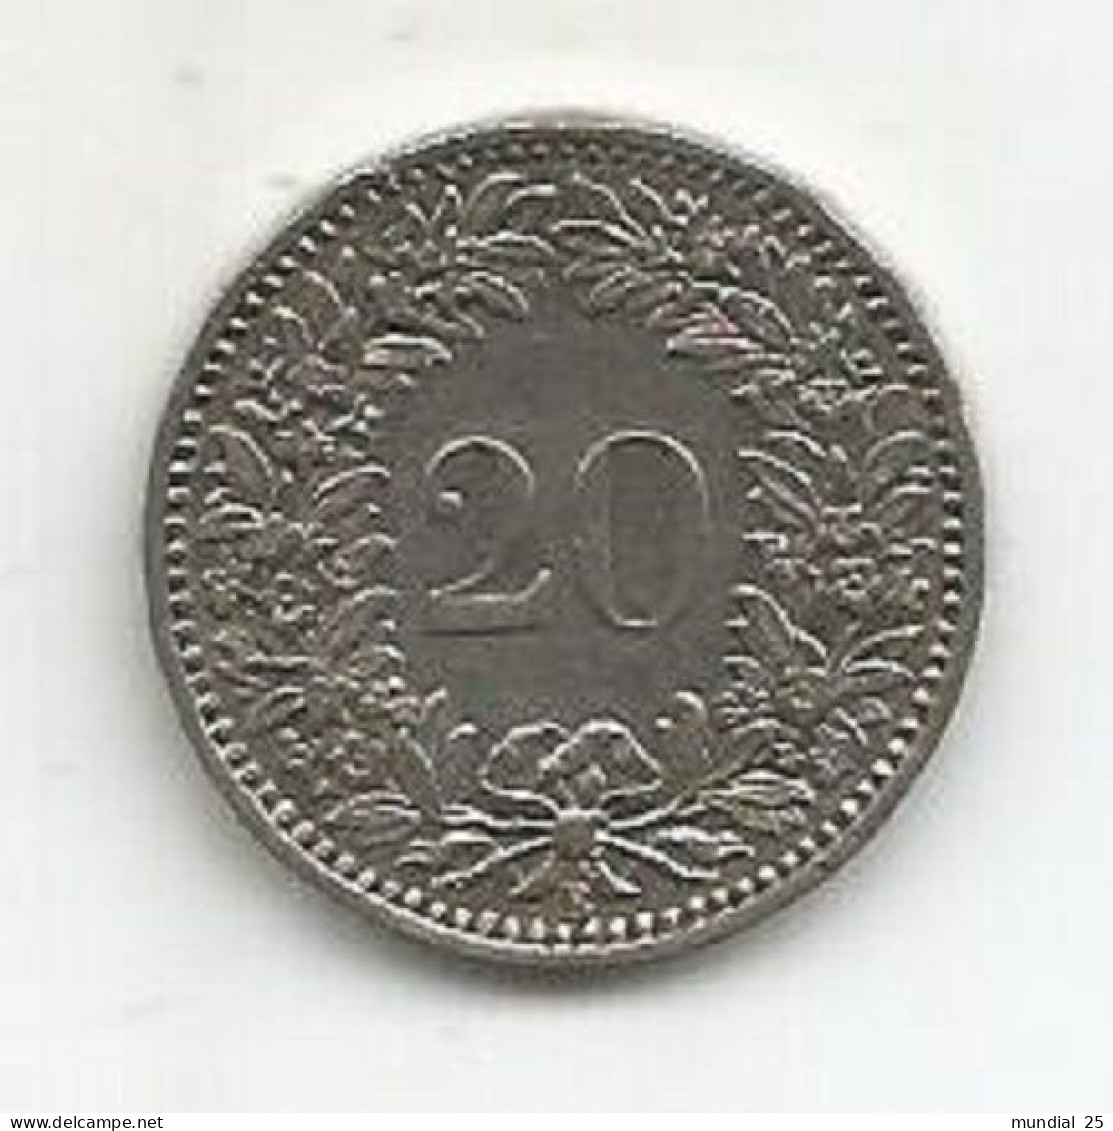 SWITZERLAND 20 RAPPEN 1913 B - 20 Centimes / Rappen